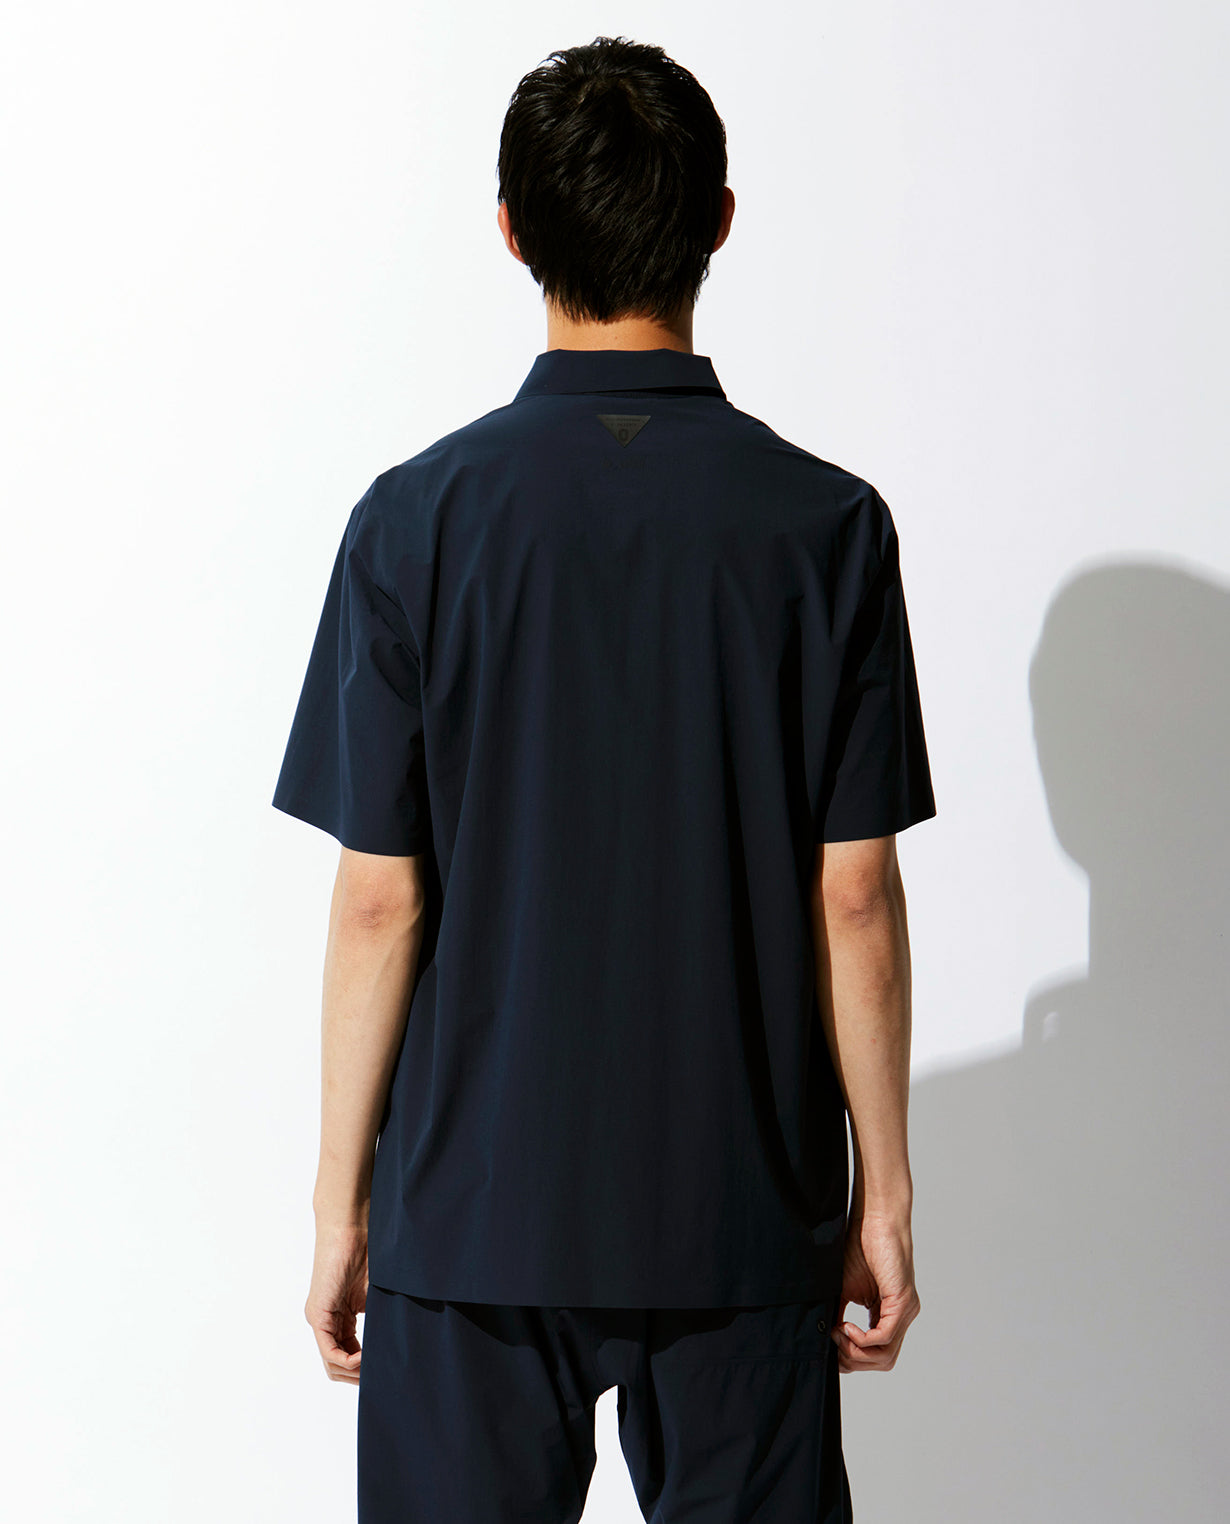 □カーボンネイビー 0_031_Z 無縫製”Zシリーズ” ライトボックスシャツ 